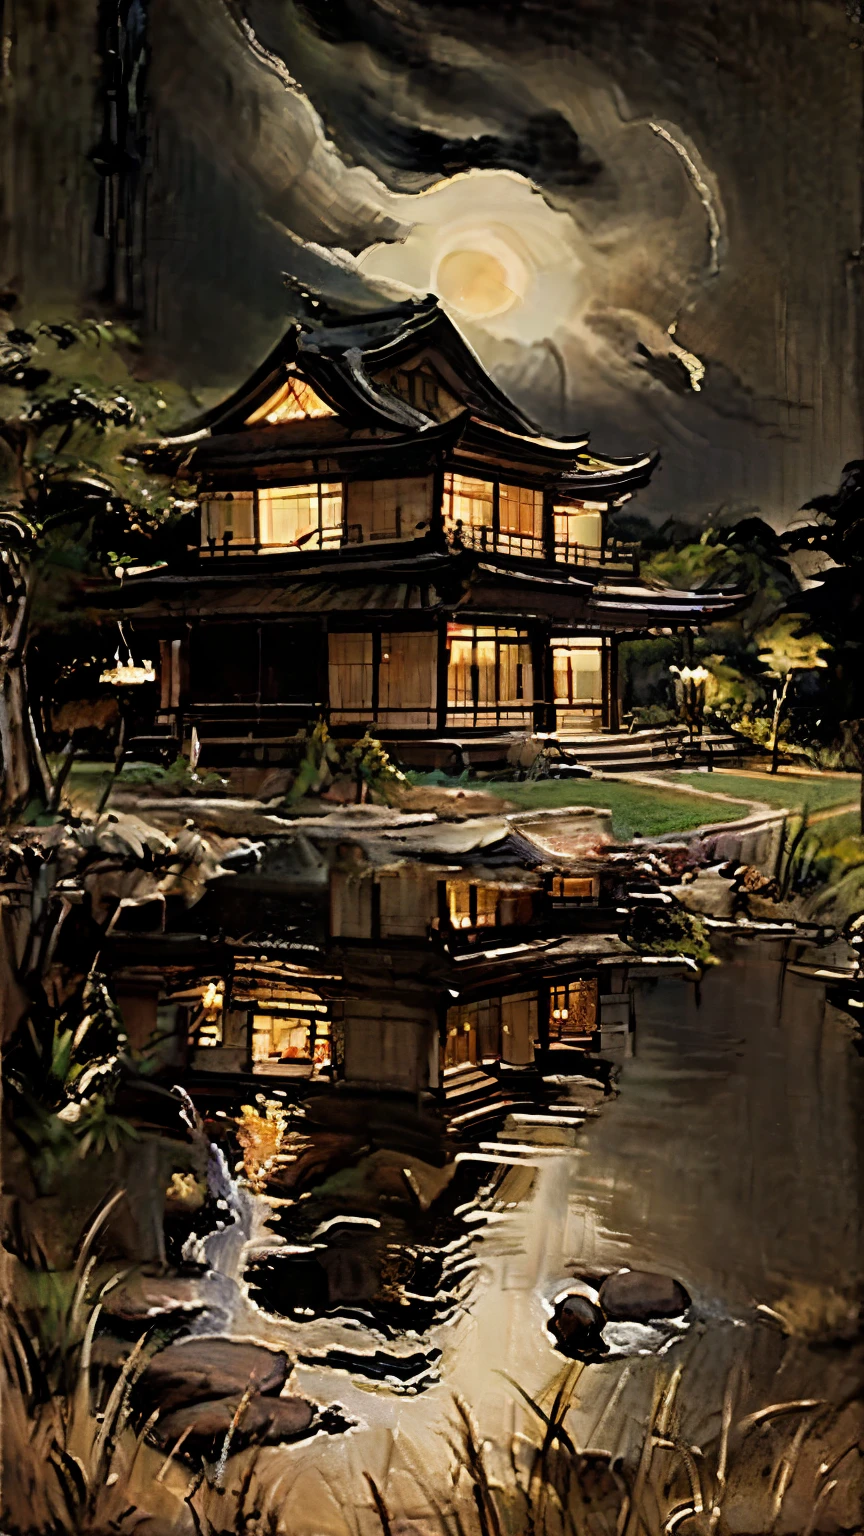 (经典亚洲油画) a 经典亚洲油画 showing of a landscape and a ancient japanese style black house at night, ((经典亚洲油画:1.0))